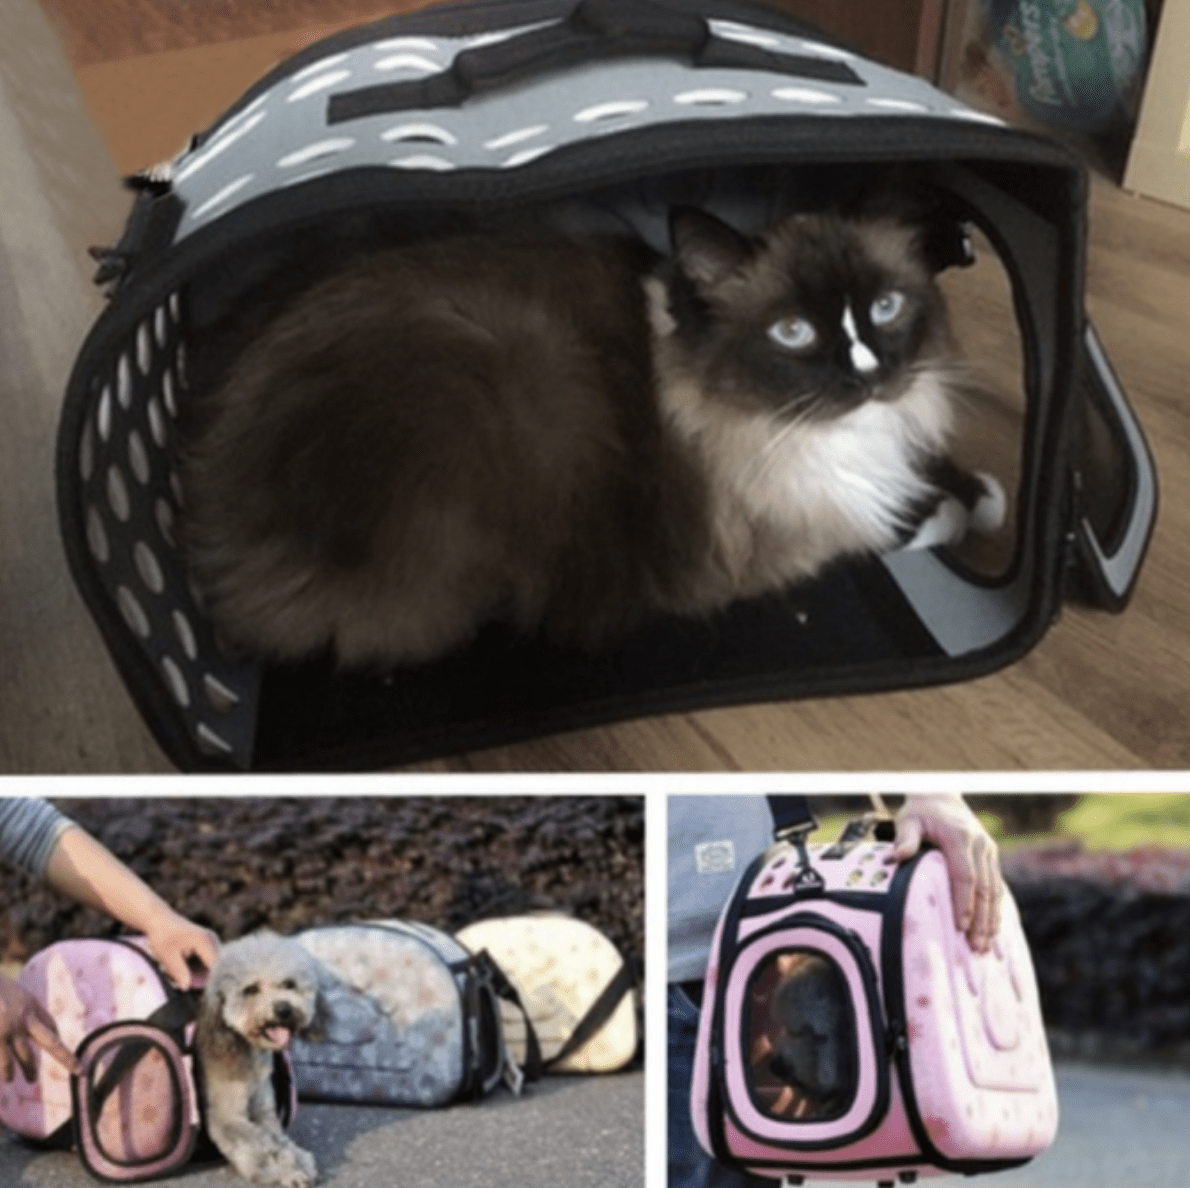 sac de voyage pour chats et chiens, extensible, pliable, capacité